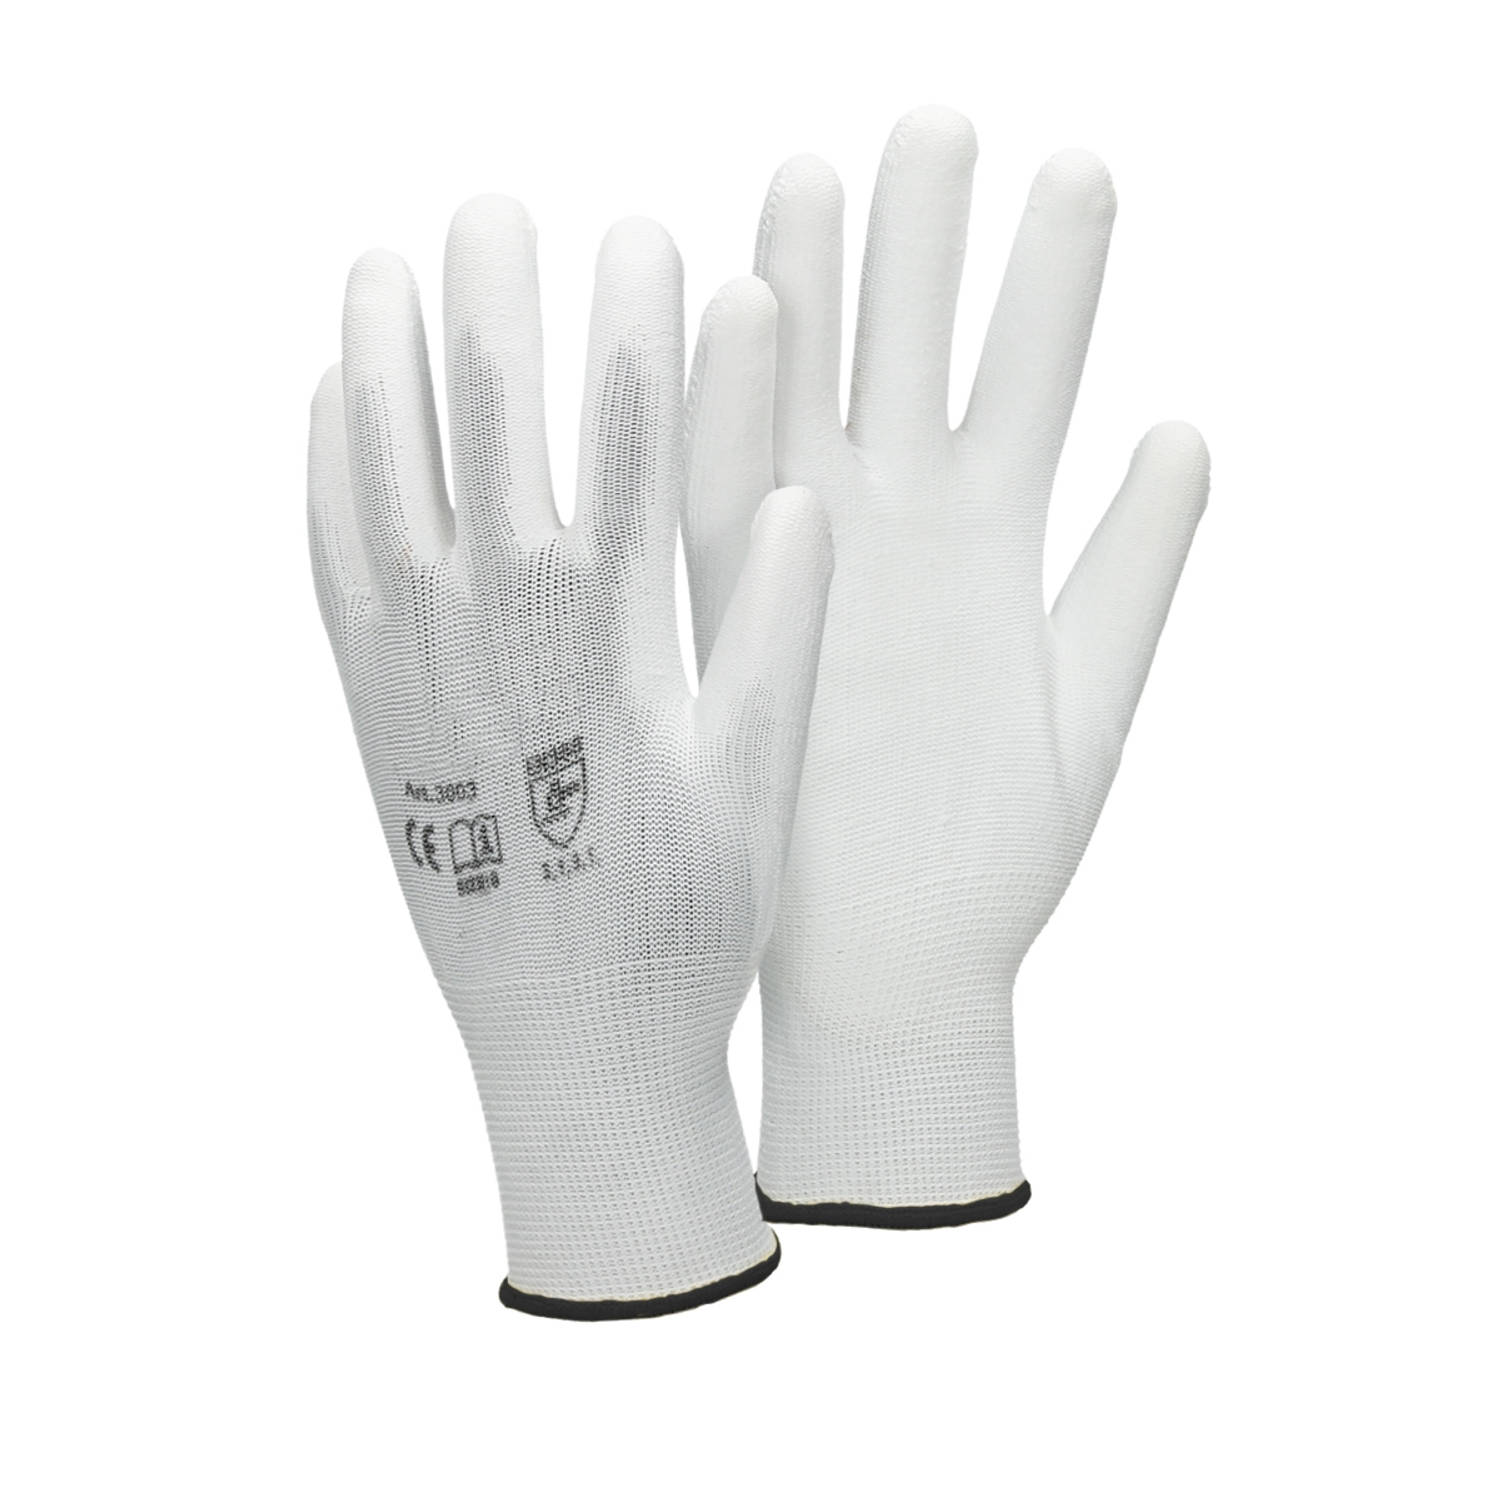 ECD Germany 4 paar werkhandschoenen met PU coating - maat 10-XL - wit - monteurshandschoenen montagehandschoenen beschermende handschoenen tuinhandschoenen - diverse kleuren & mate